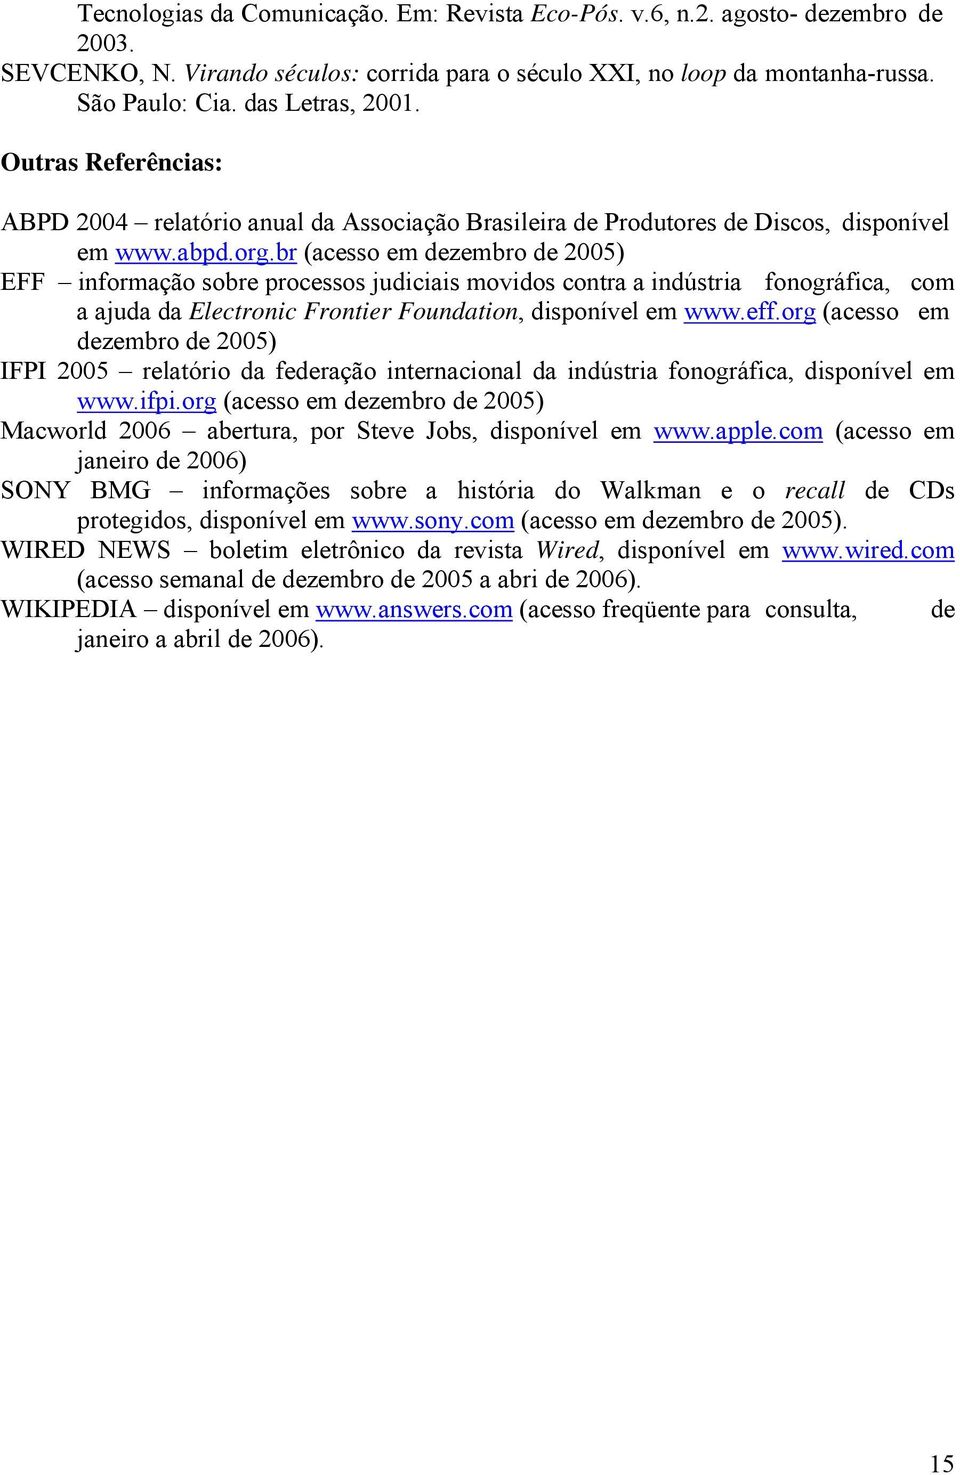 br (acesso em dezembro de 2005) EFF informação sobre processos judiciais movidos contra a indústria fonográfica, com a ajuda da Electronic Frontier Foundation, disponível em www.eff.